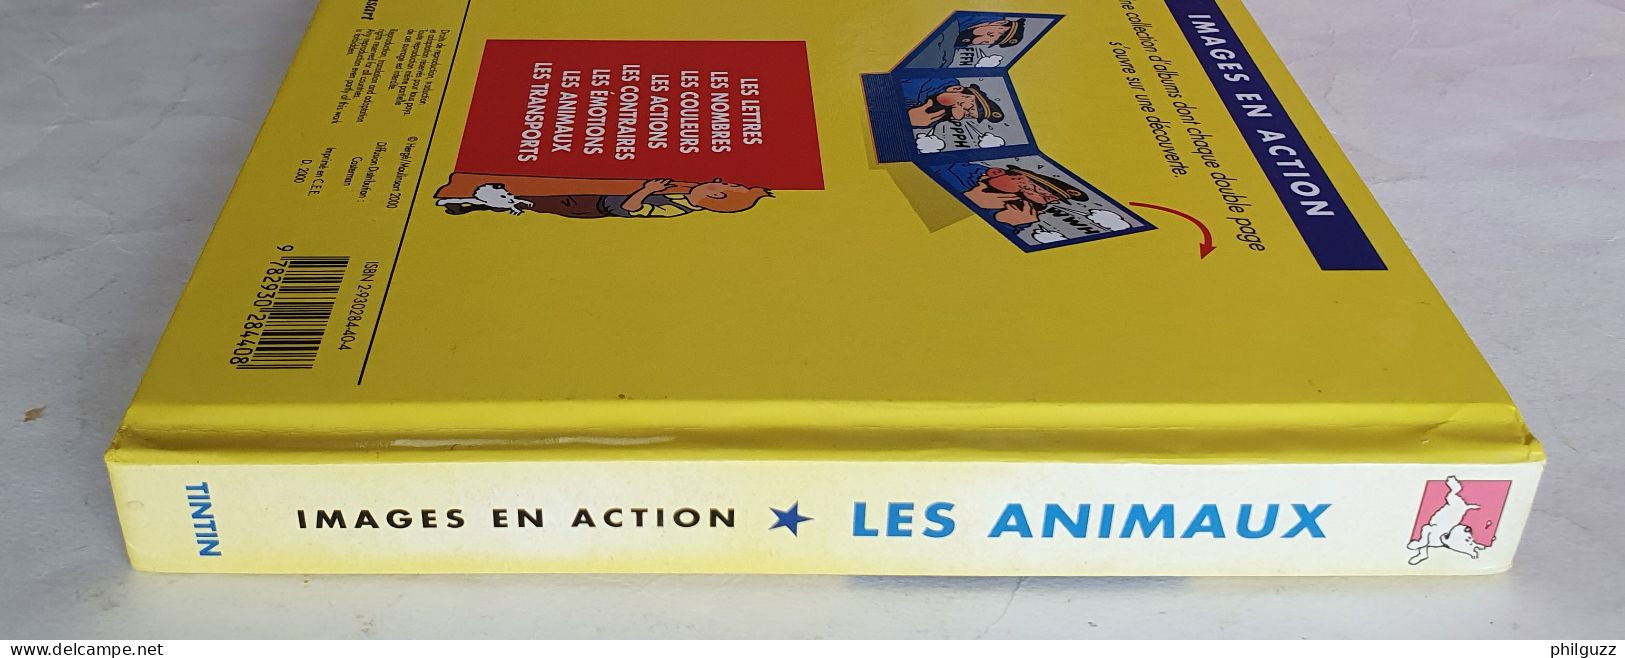 Images En Action LIVRE ALBUM TINTIN MOULINSART 2000 JE DECOUVRE LES ANIMAUX - Hergé